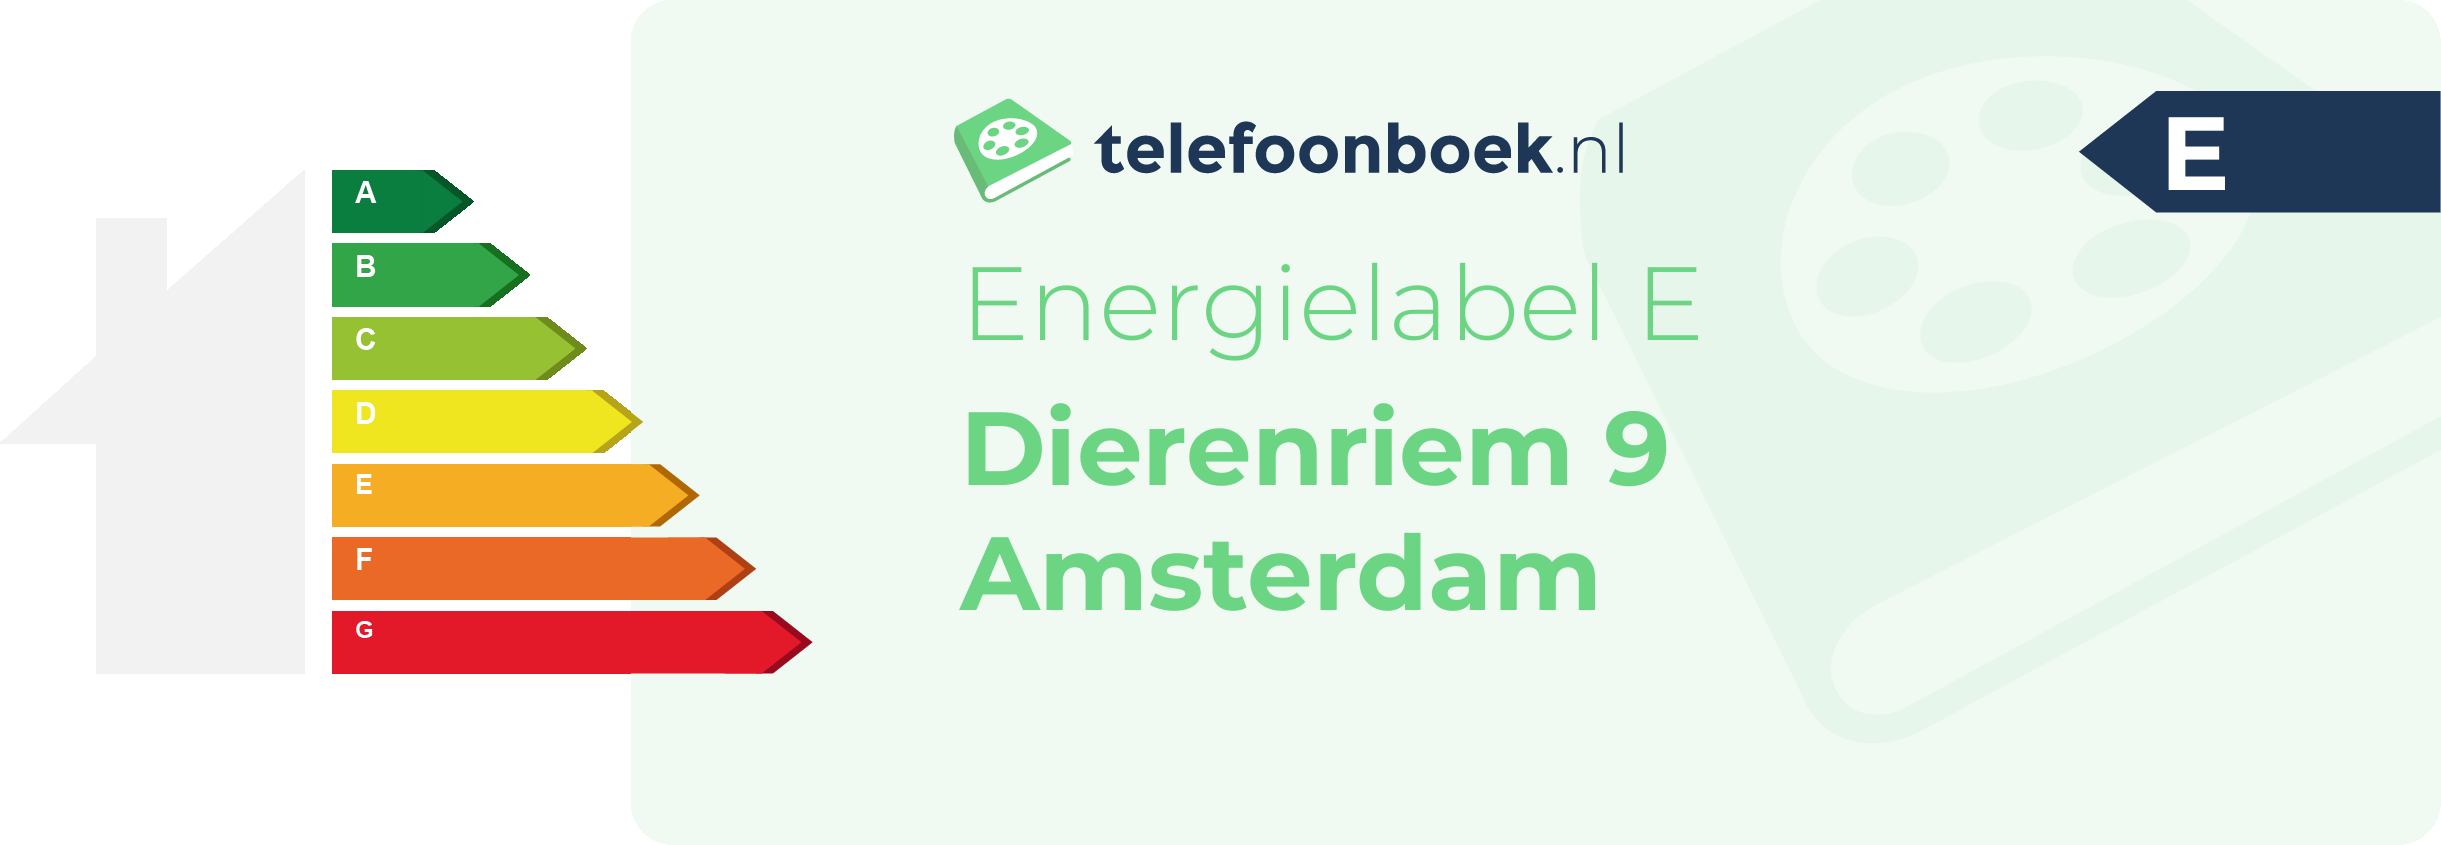 Energielabel Dierenriem 9 Amsterdam